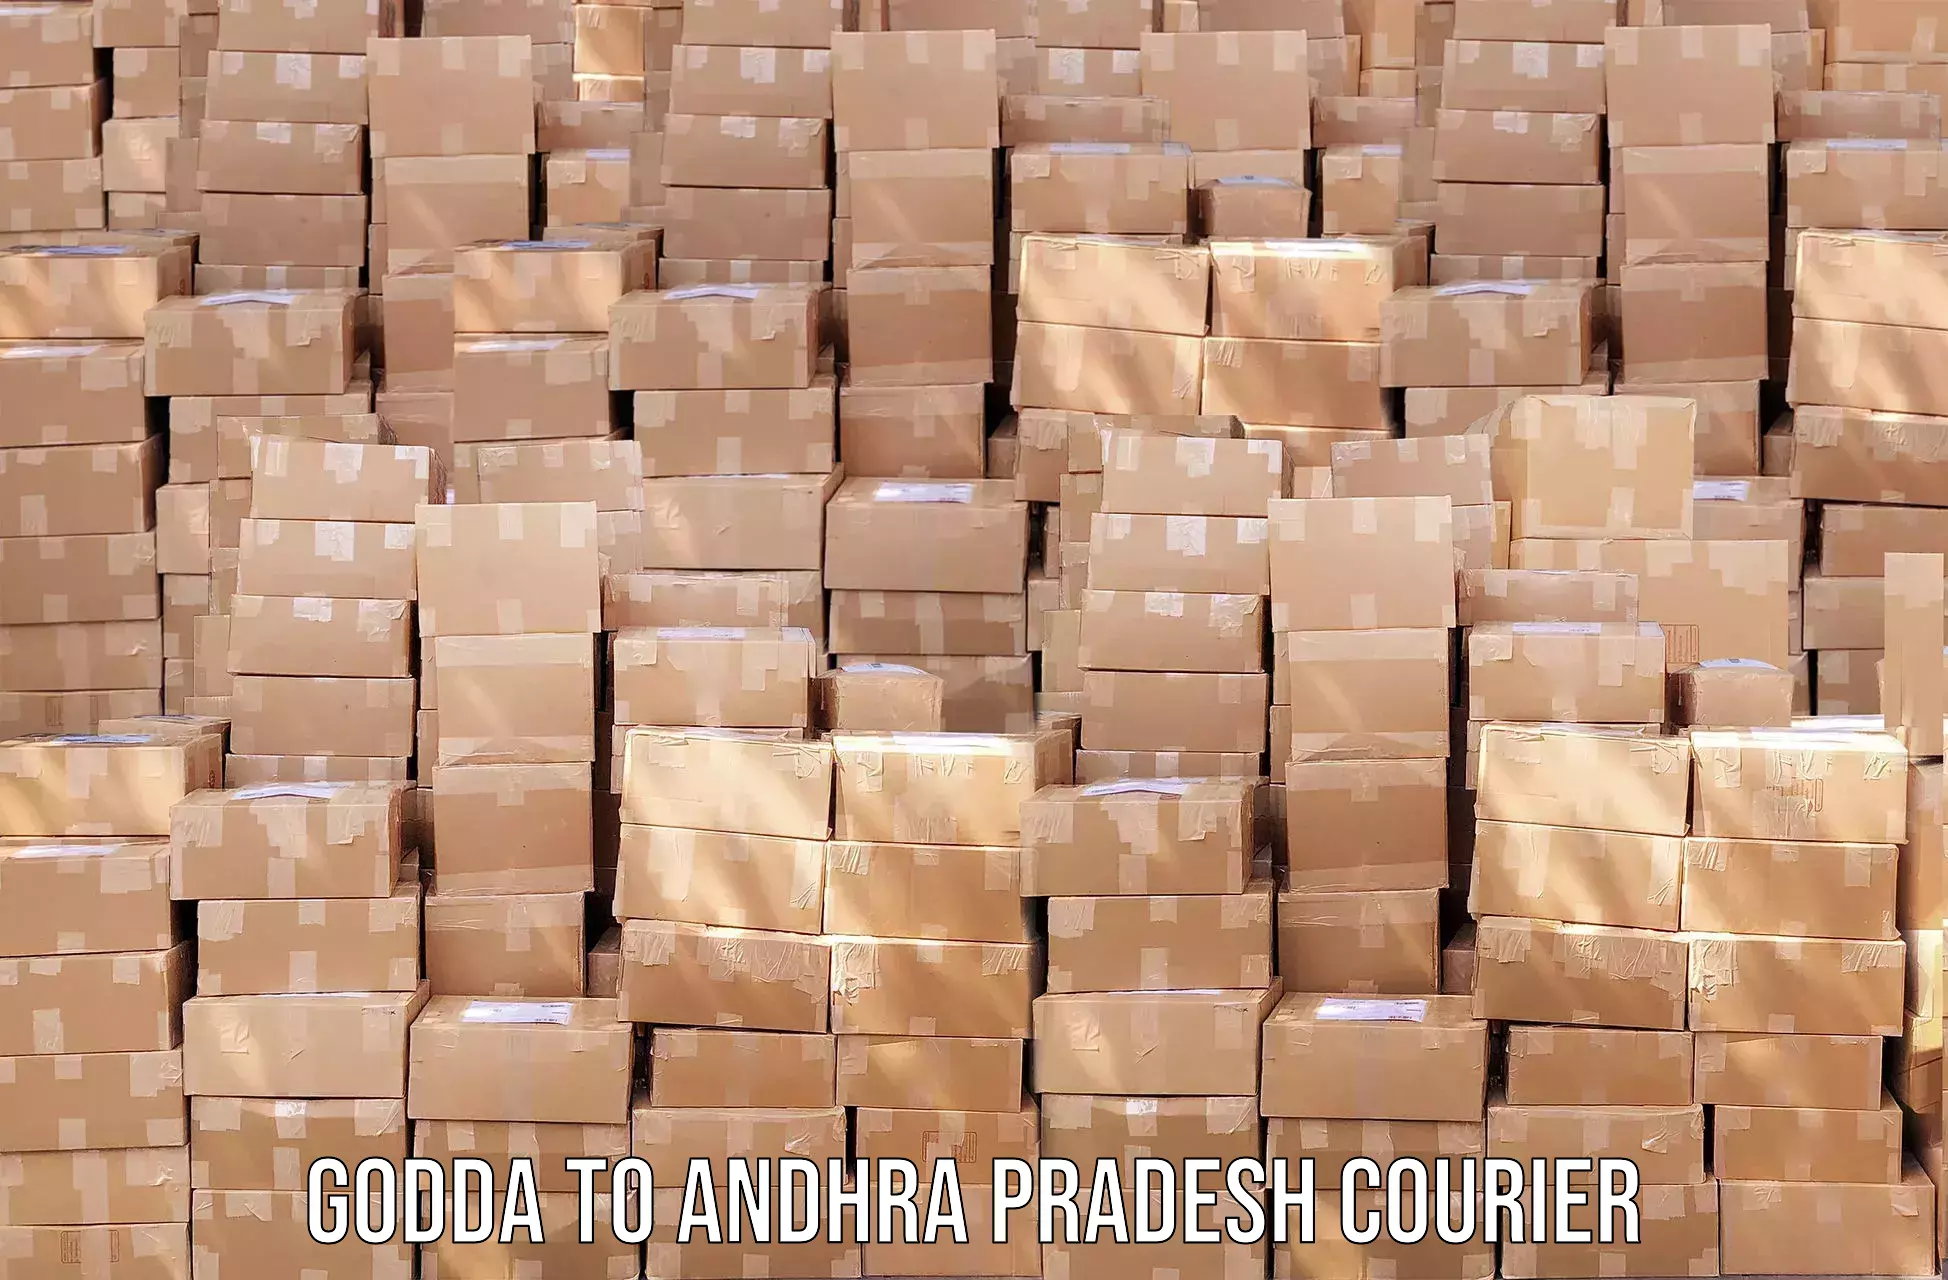 Advanced courier platforms Godda to Sri Venkateswara Institute of Medical Sciences Tirupati